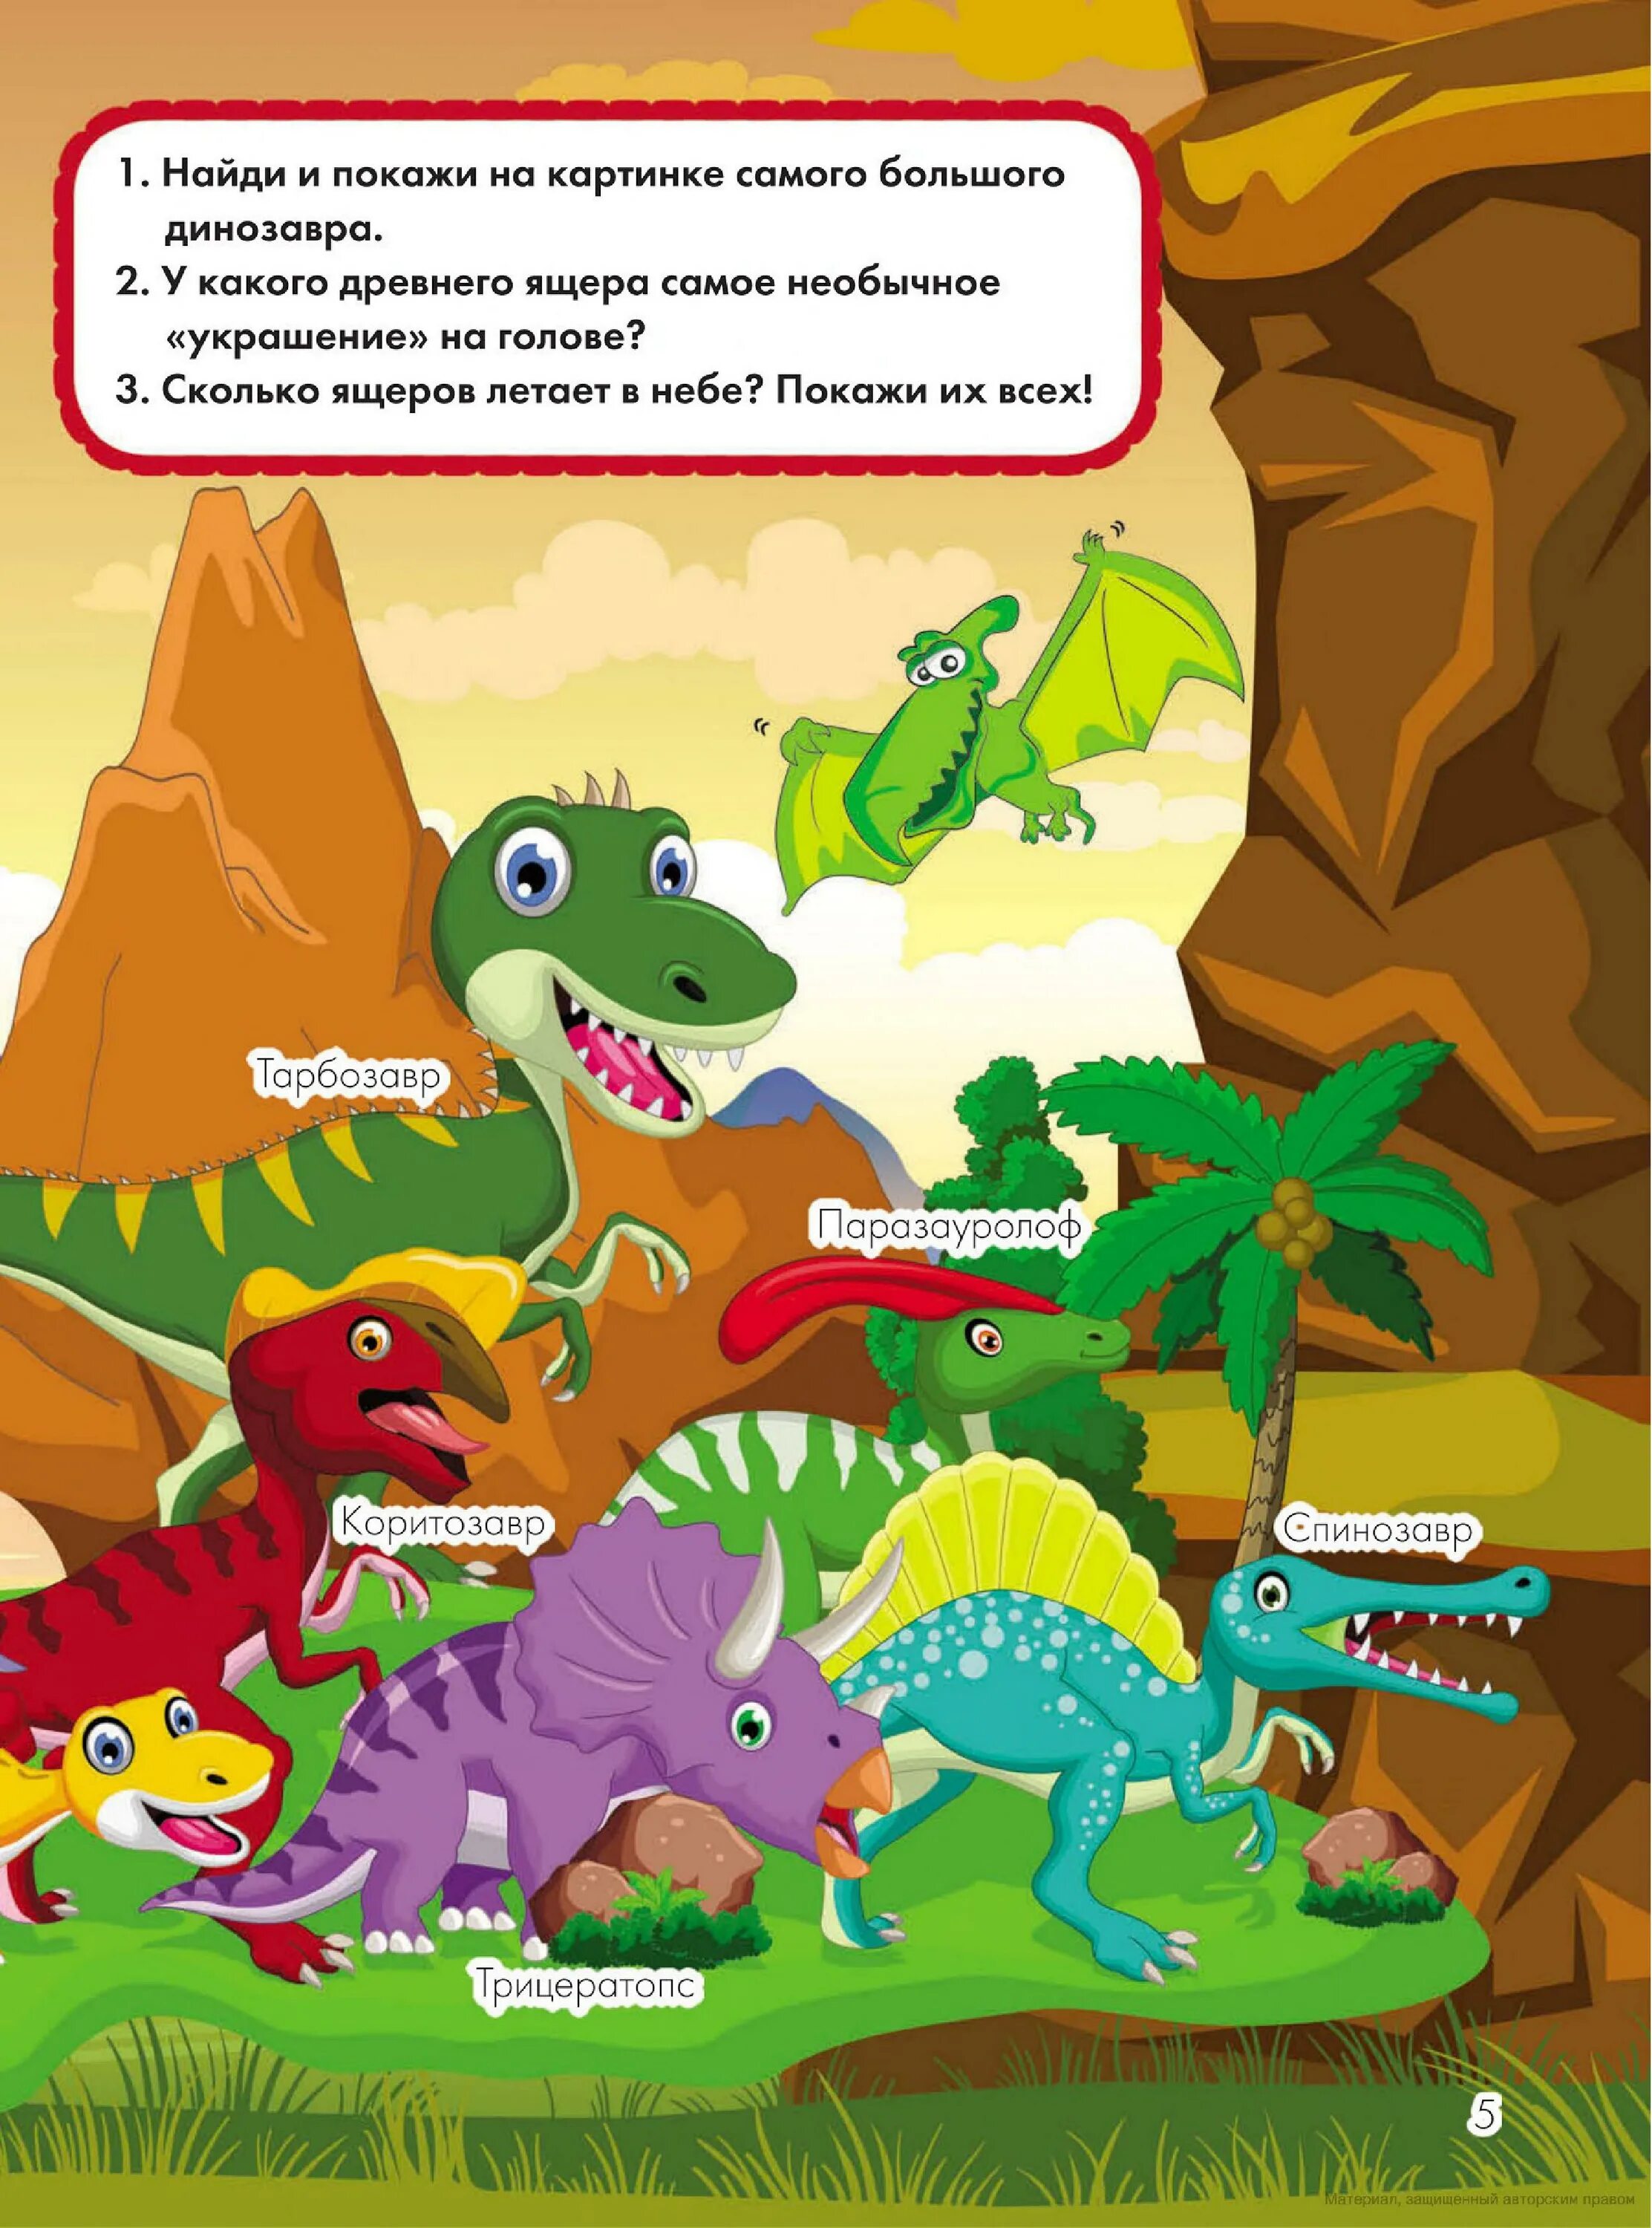 Вопросы динозавра. Книги про динозавров для детей 4-5 лет. Загадки про динозавров для детей. Динозавры для детей. Динозавры для детей 6 лет.